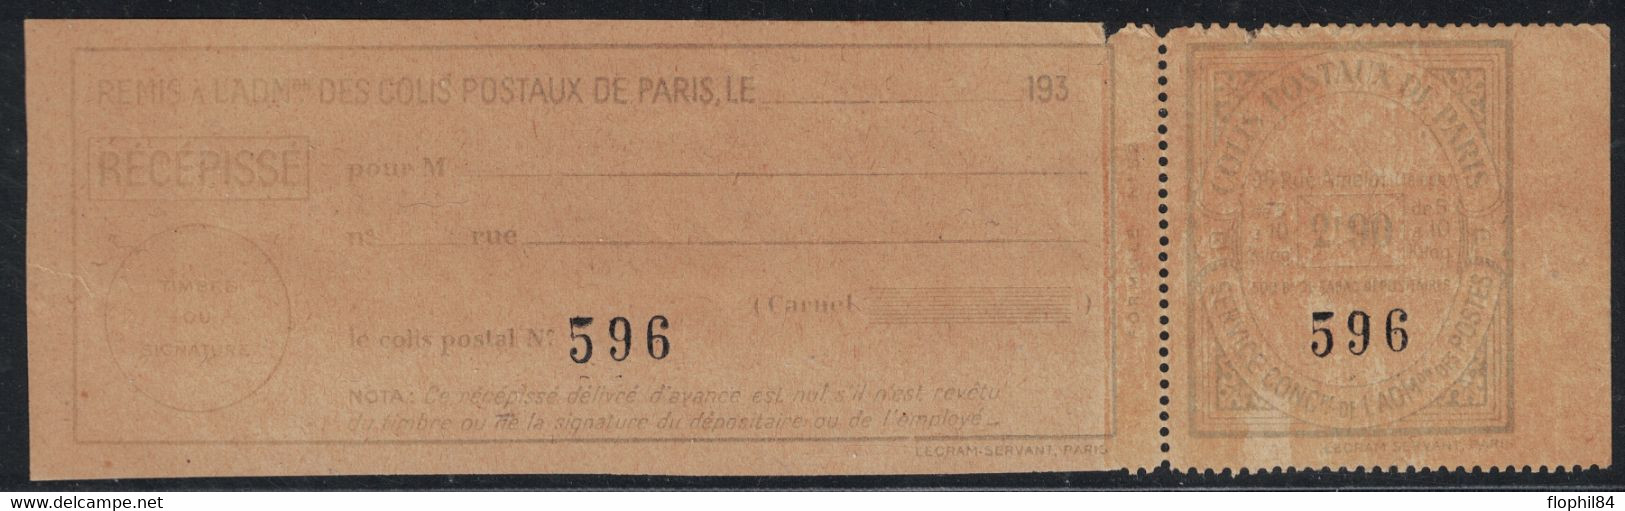 COLIS POSTAUX DE PARIS POUR PARIS - N°153 - 2F90 BLEU CLAIR SUR PAPIER JAUNE (NON SIGNALE ) - COTE DU NORMAL 22€. - Mint/Hinged